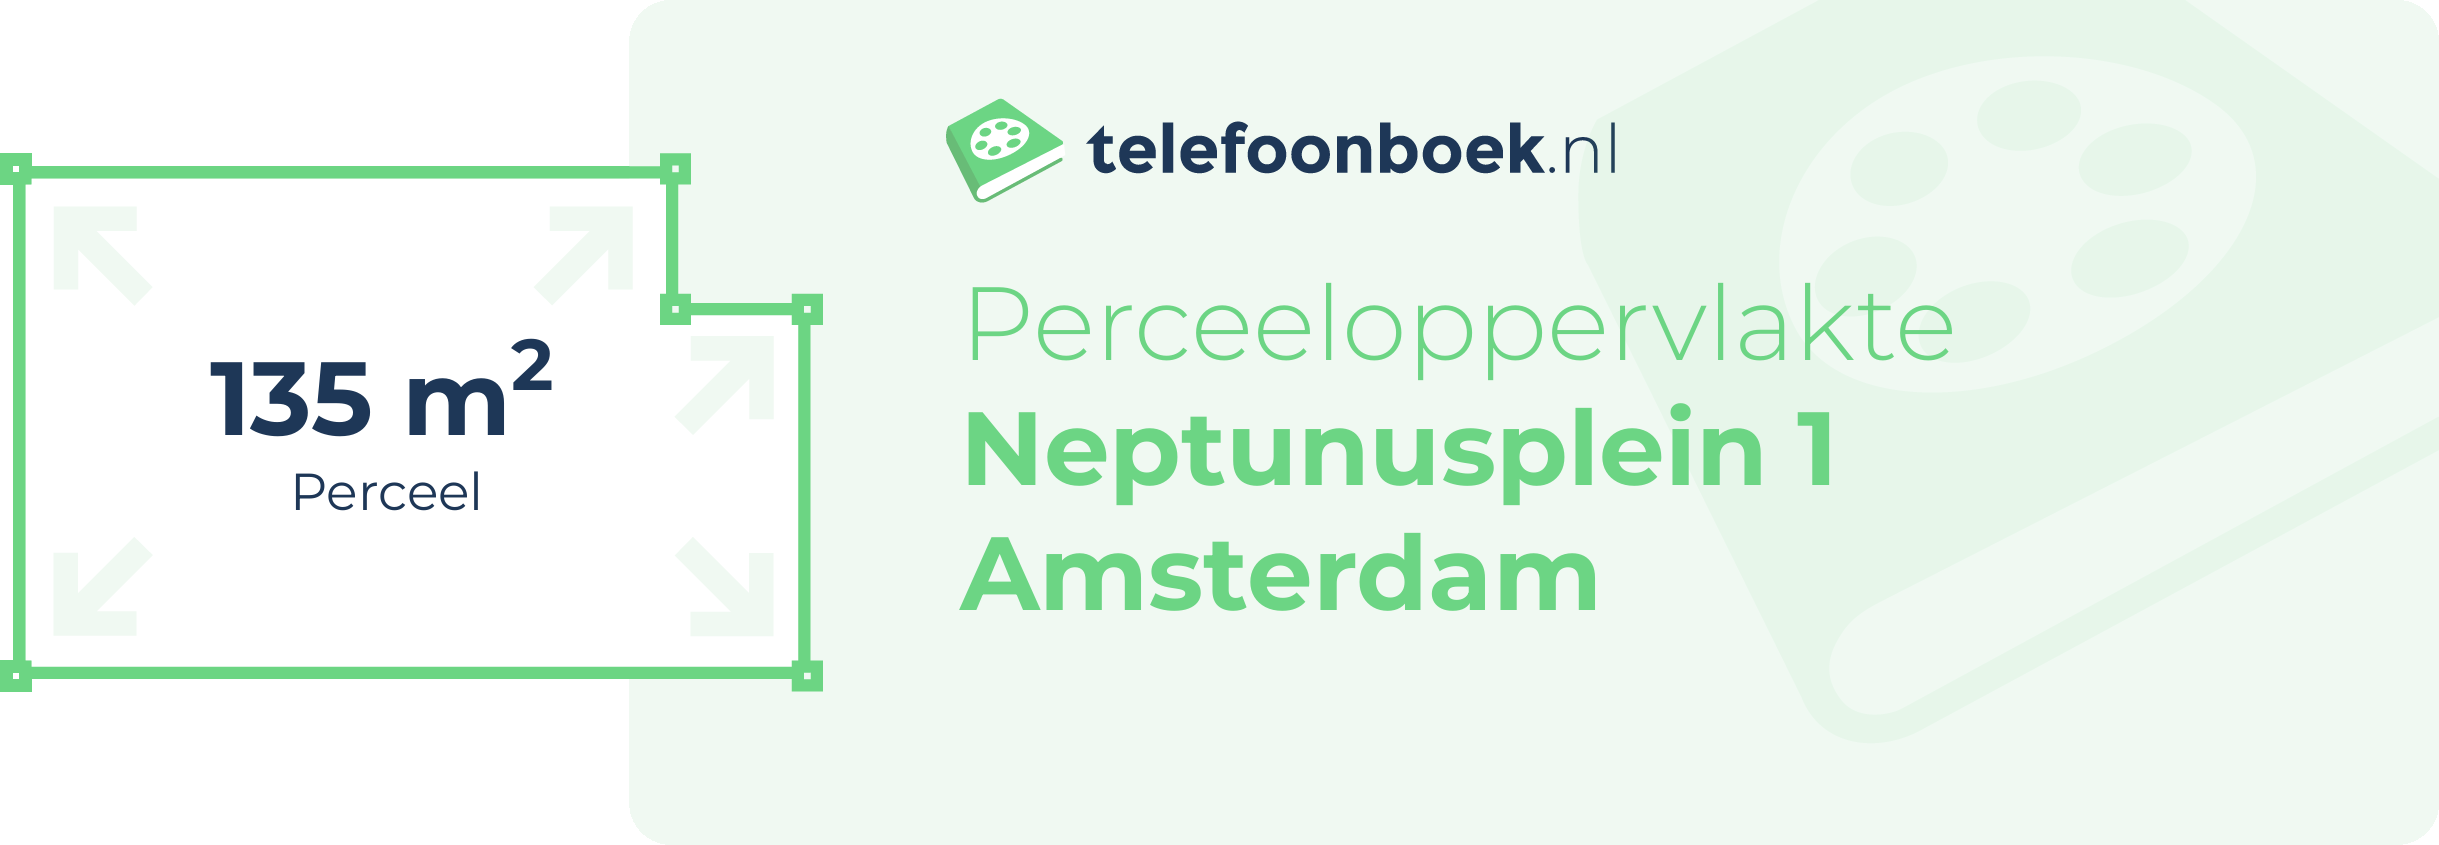 Perceeloppervlakte Neptunusplein 1 Amsterdam